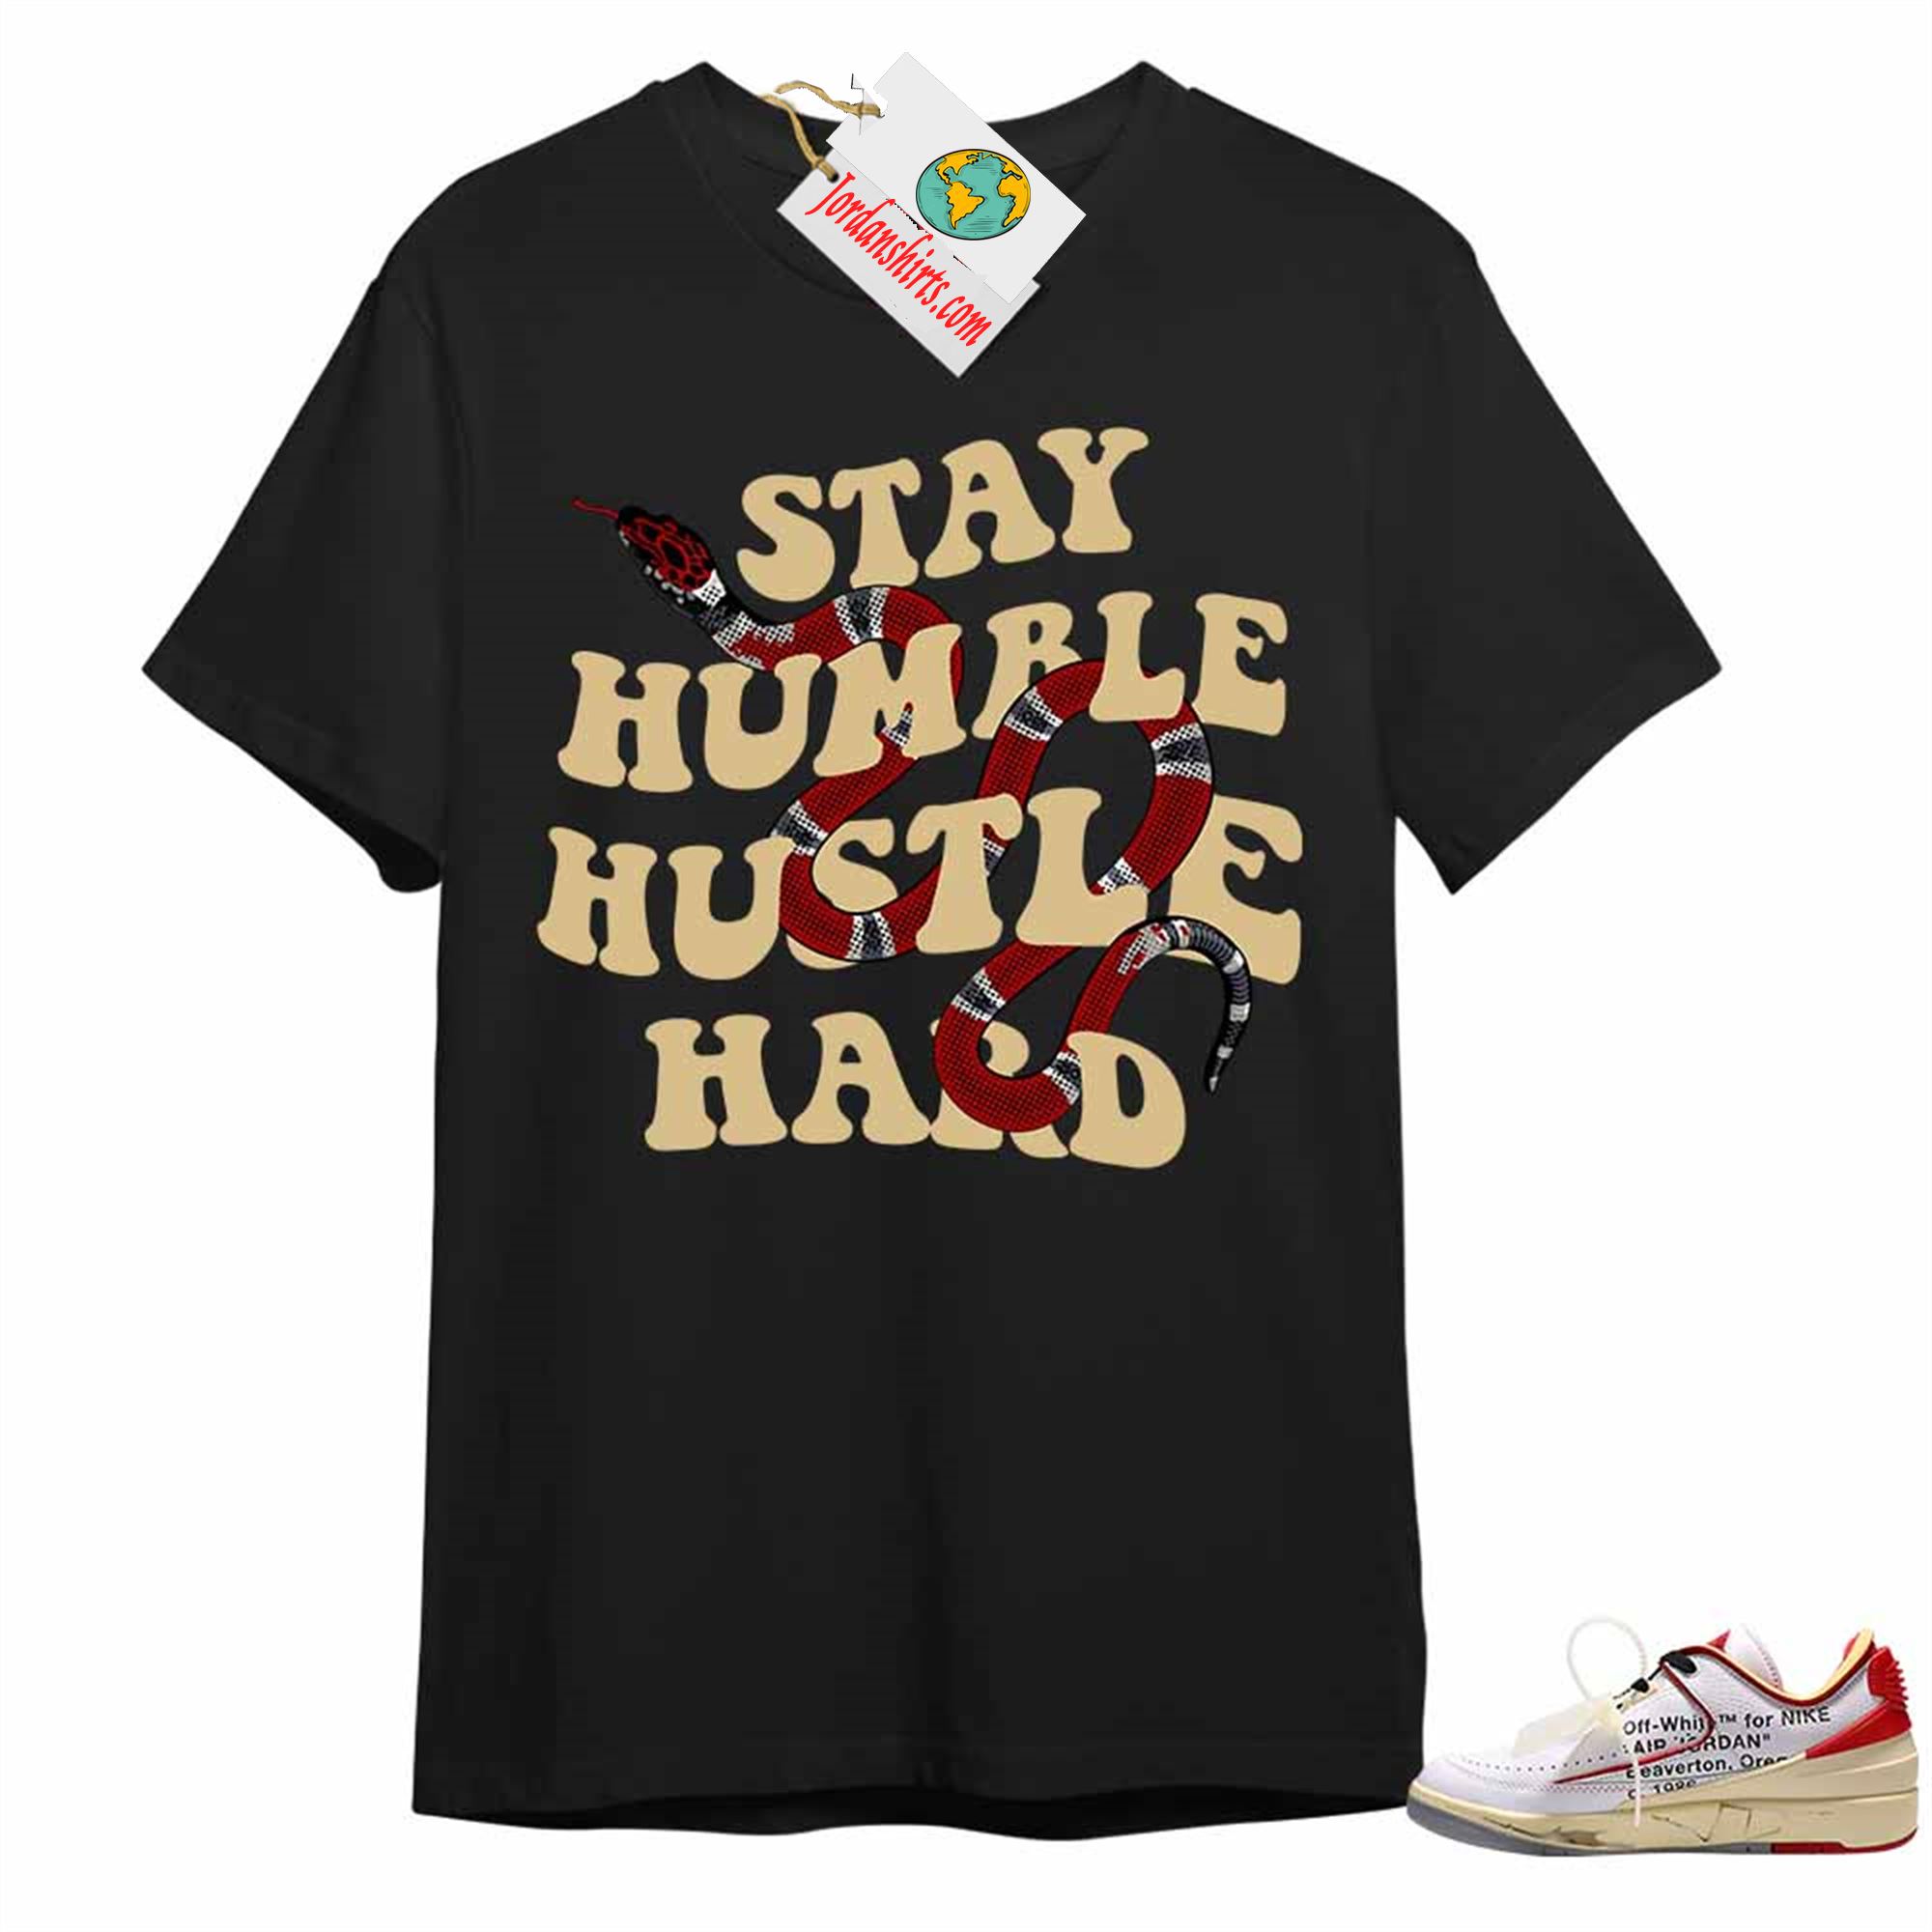 Jordan 2 Shirt, Stay Humble Hustle Hard King Snake Black Air Jordan 2 Low White Red Off-white 2s Plus Size Up To 5xl